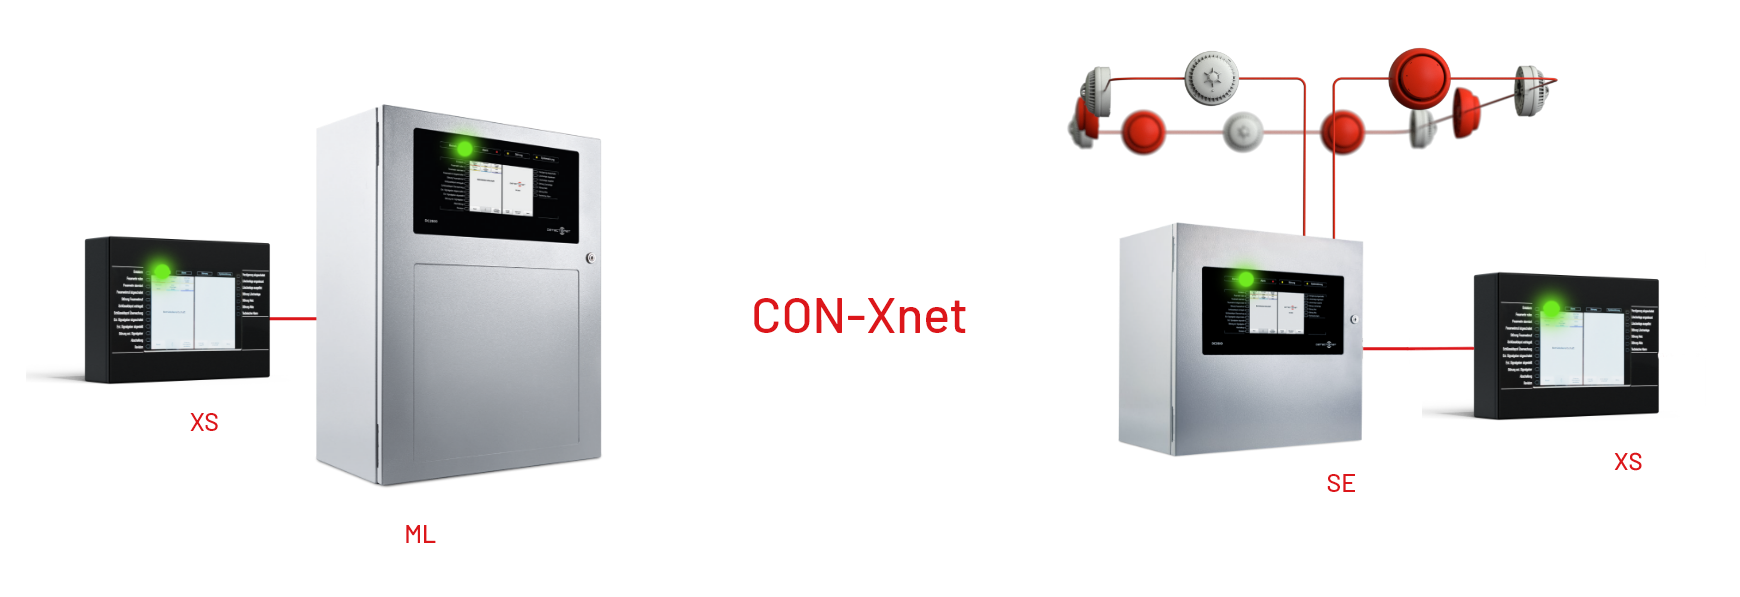 dc3500se im CON-Xnet